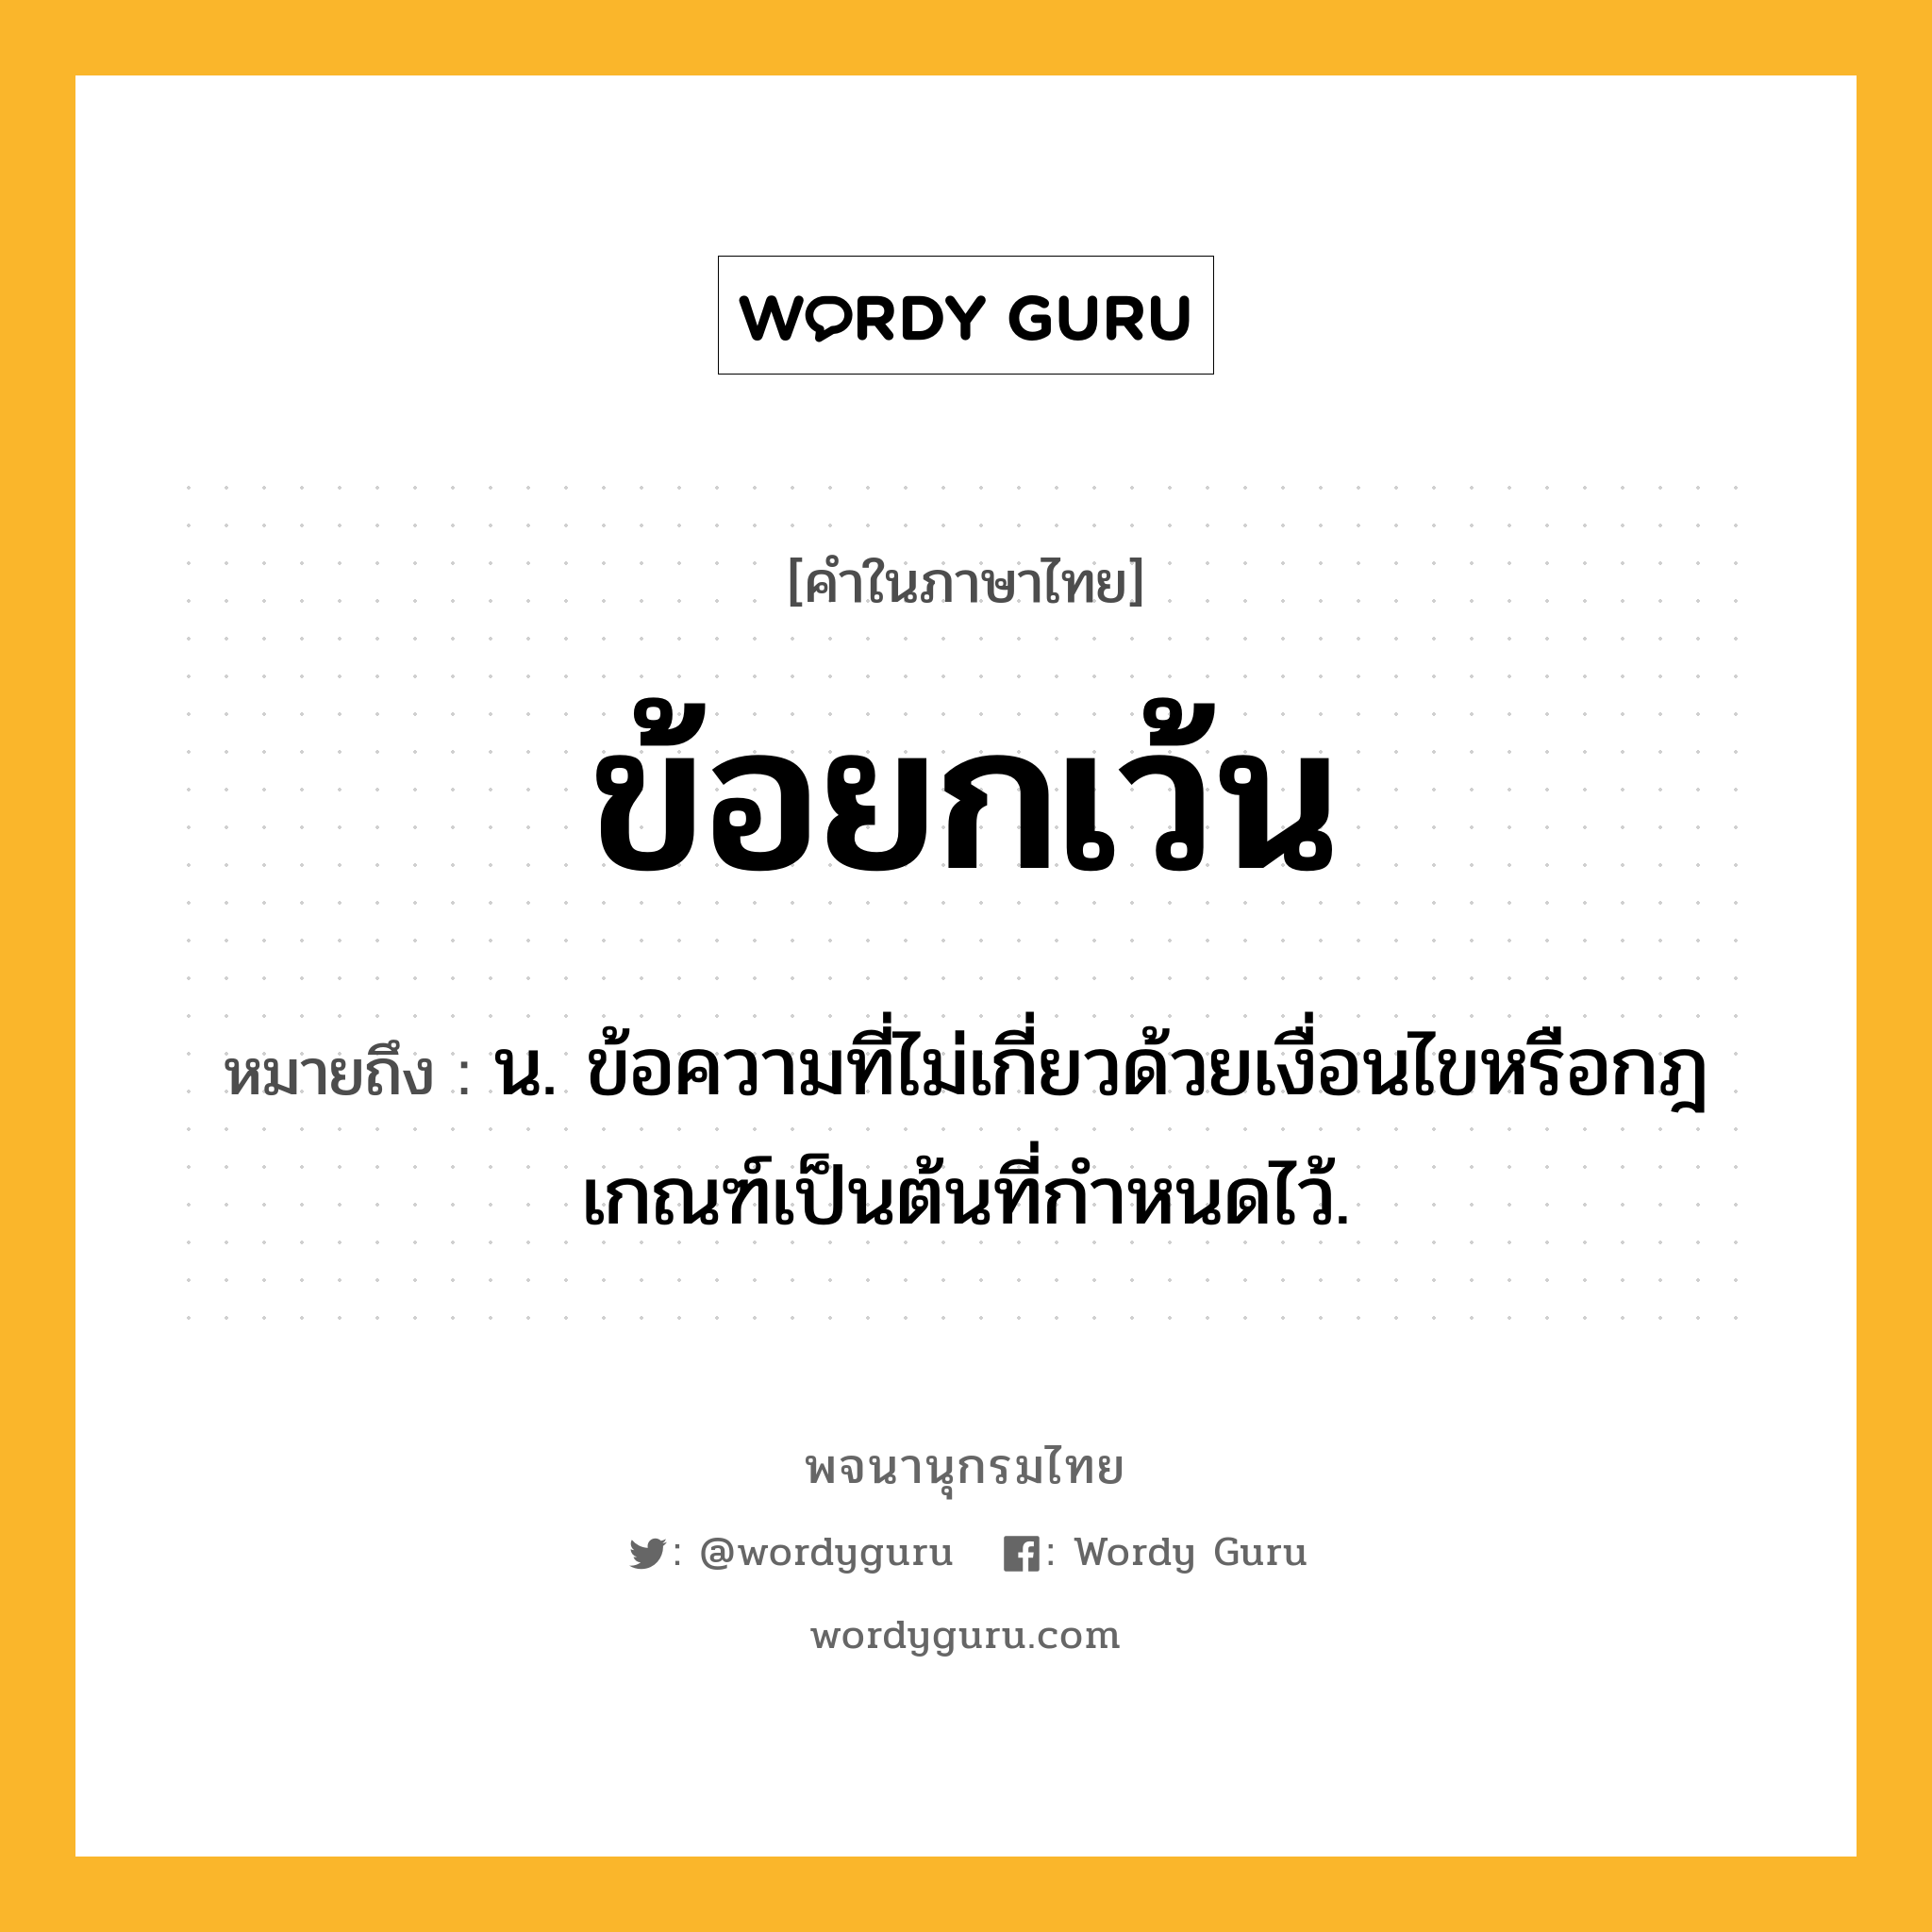 ข้อยกเว้น ความหมาย หมายถึงอะไร?, คำในภาษาไทย ข้อยกเว้น หมายถึง น. ข้อความที่ไม่เกี่ยวด้วยเงื่อนไขหรือกฎเกณฑ์เป็นต้นที่กำหนดไว้.